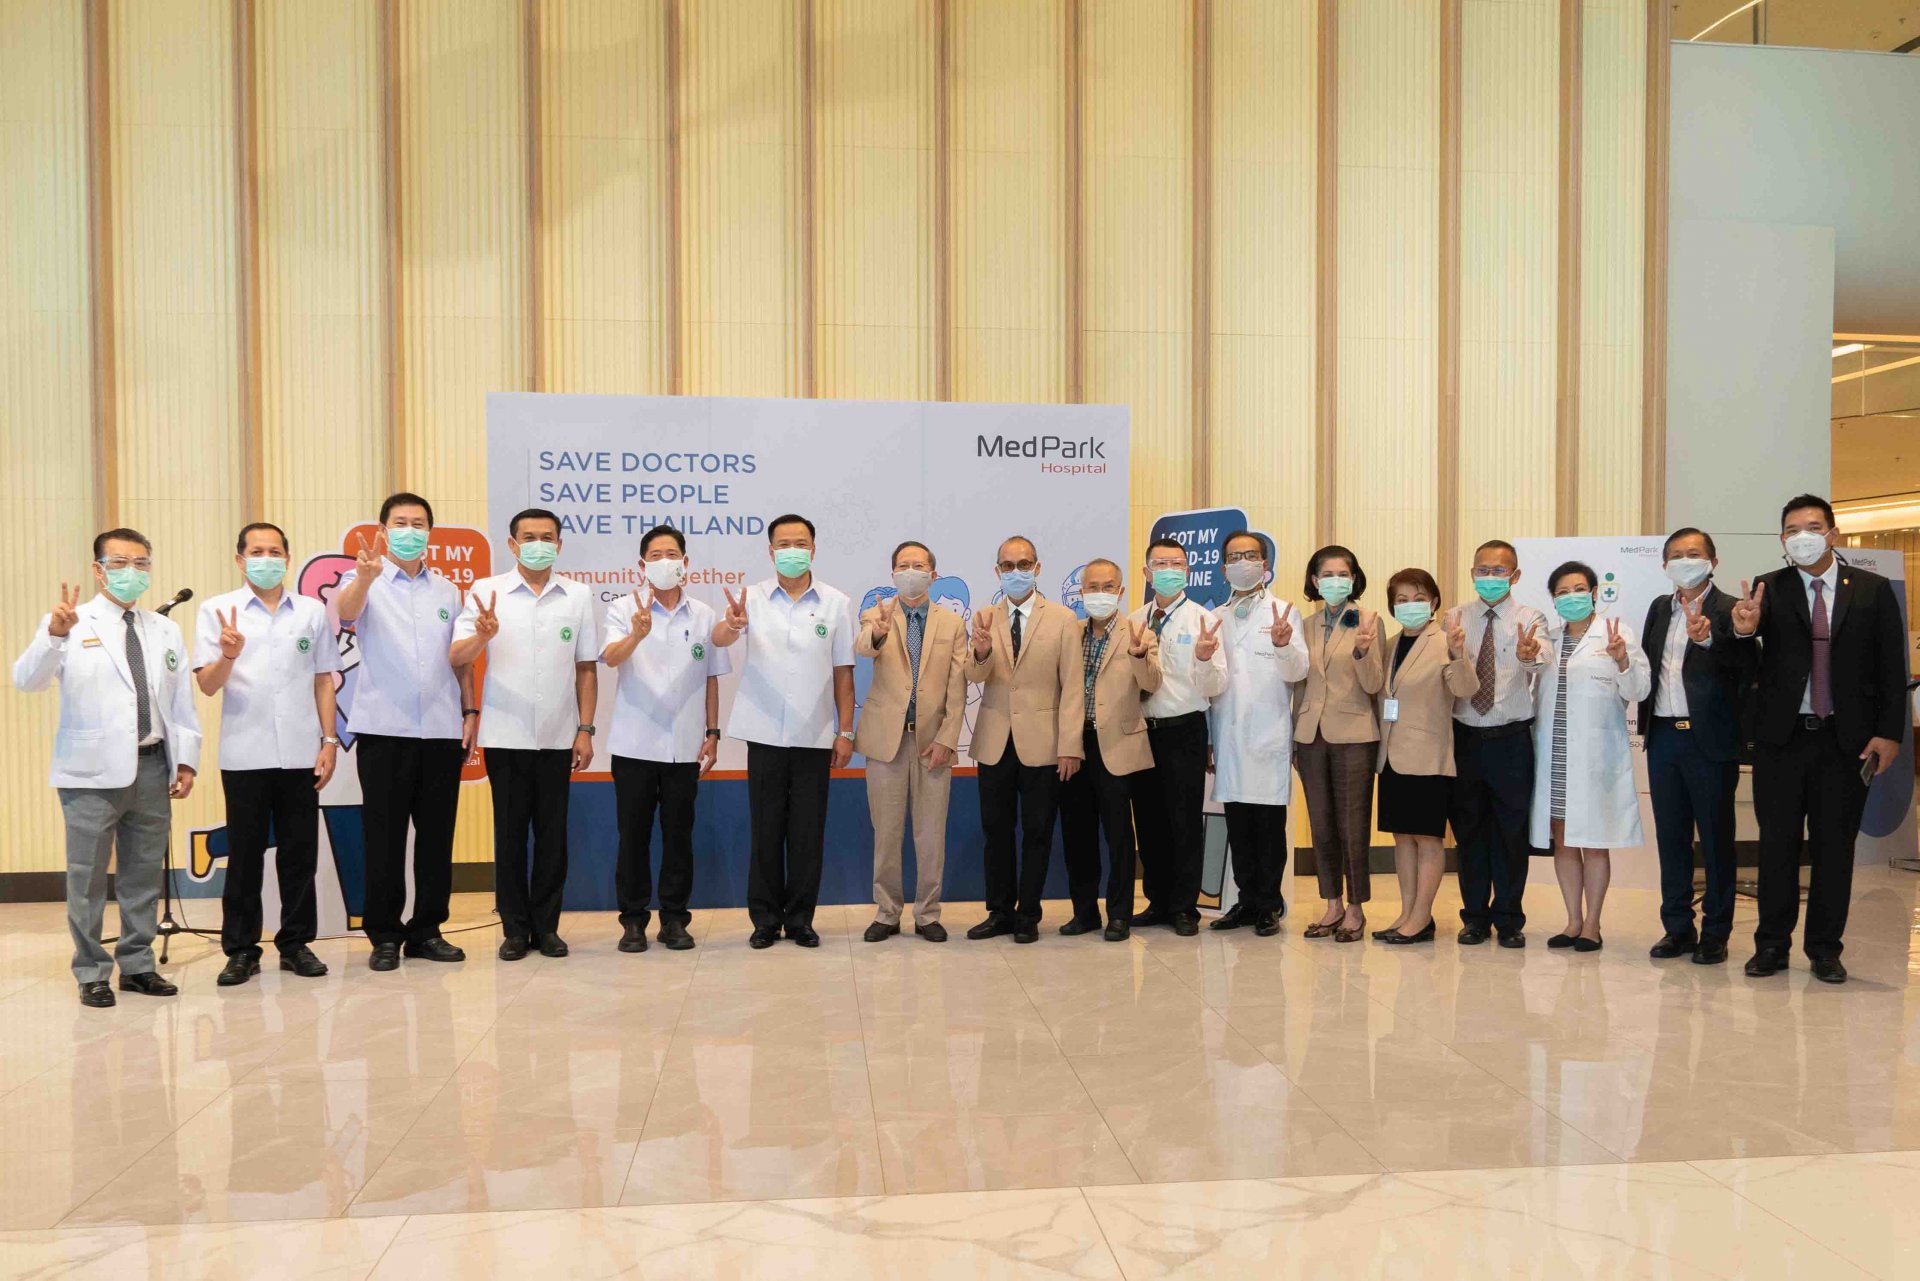 โรงพยาบาลเมดพาร์คเปิดตัวโครงการ  ‘Save Doctors, Save People, Save Thailand’  ระดมฉีดวัคซีน 2,116 หมอคลินิก ฟื้นความเชื่อมั่นประชาชน